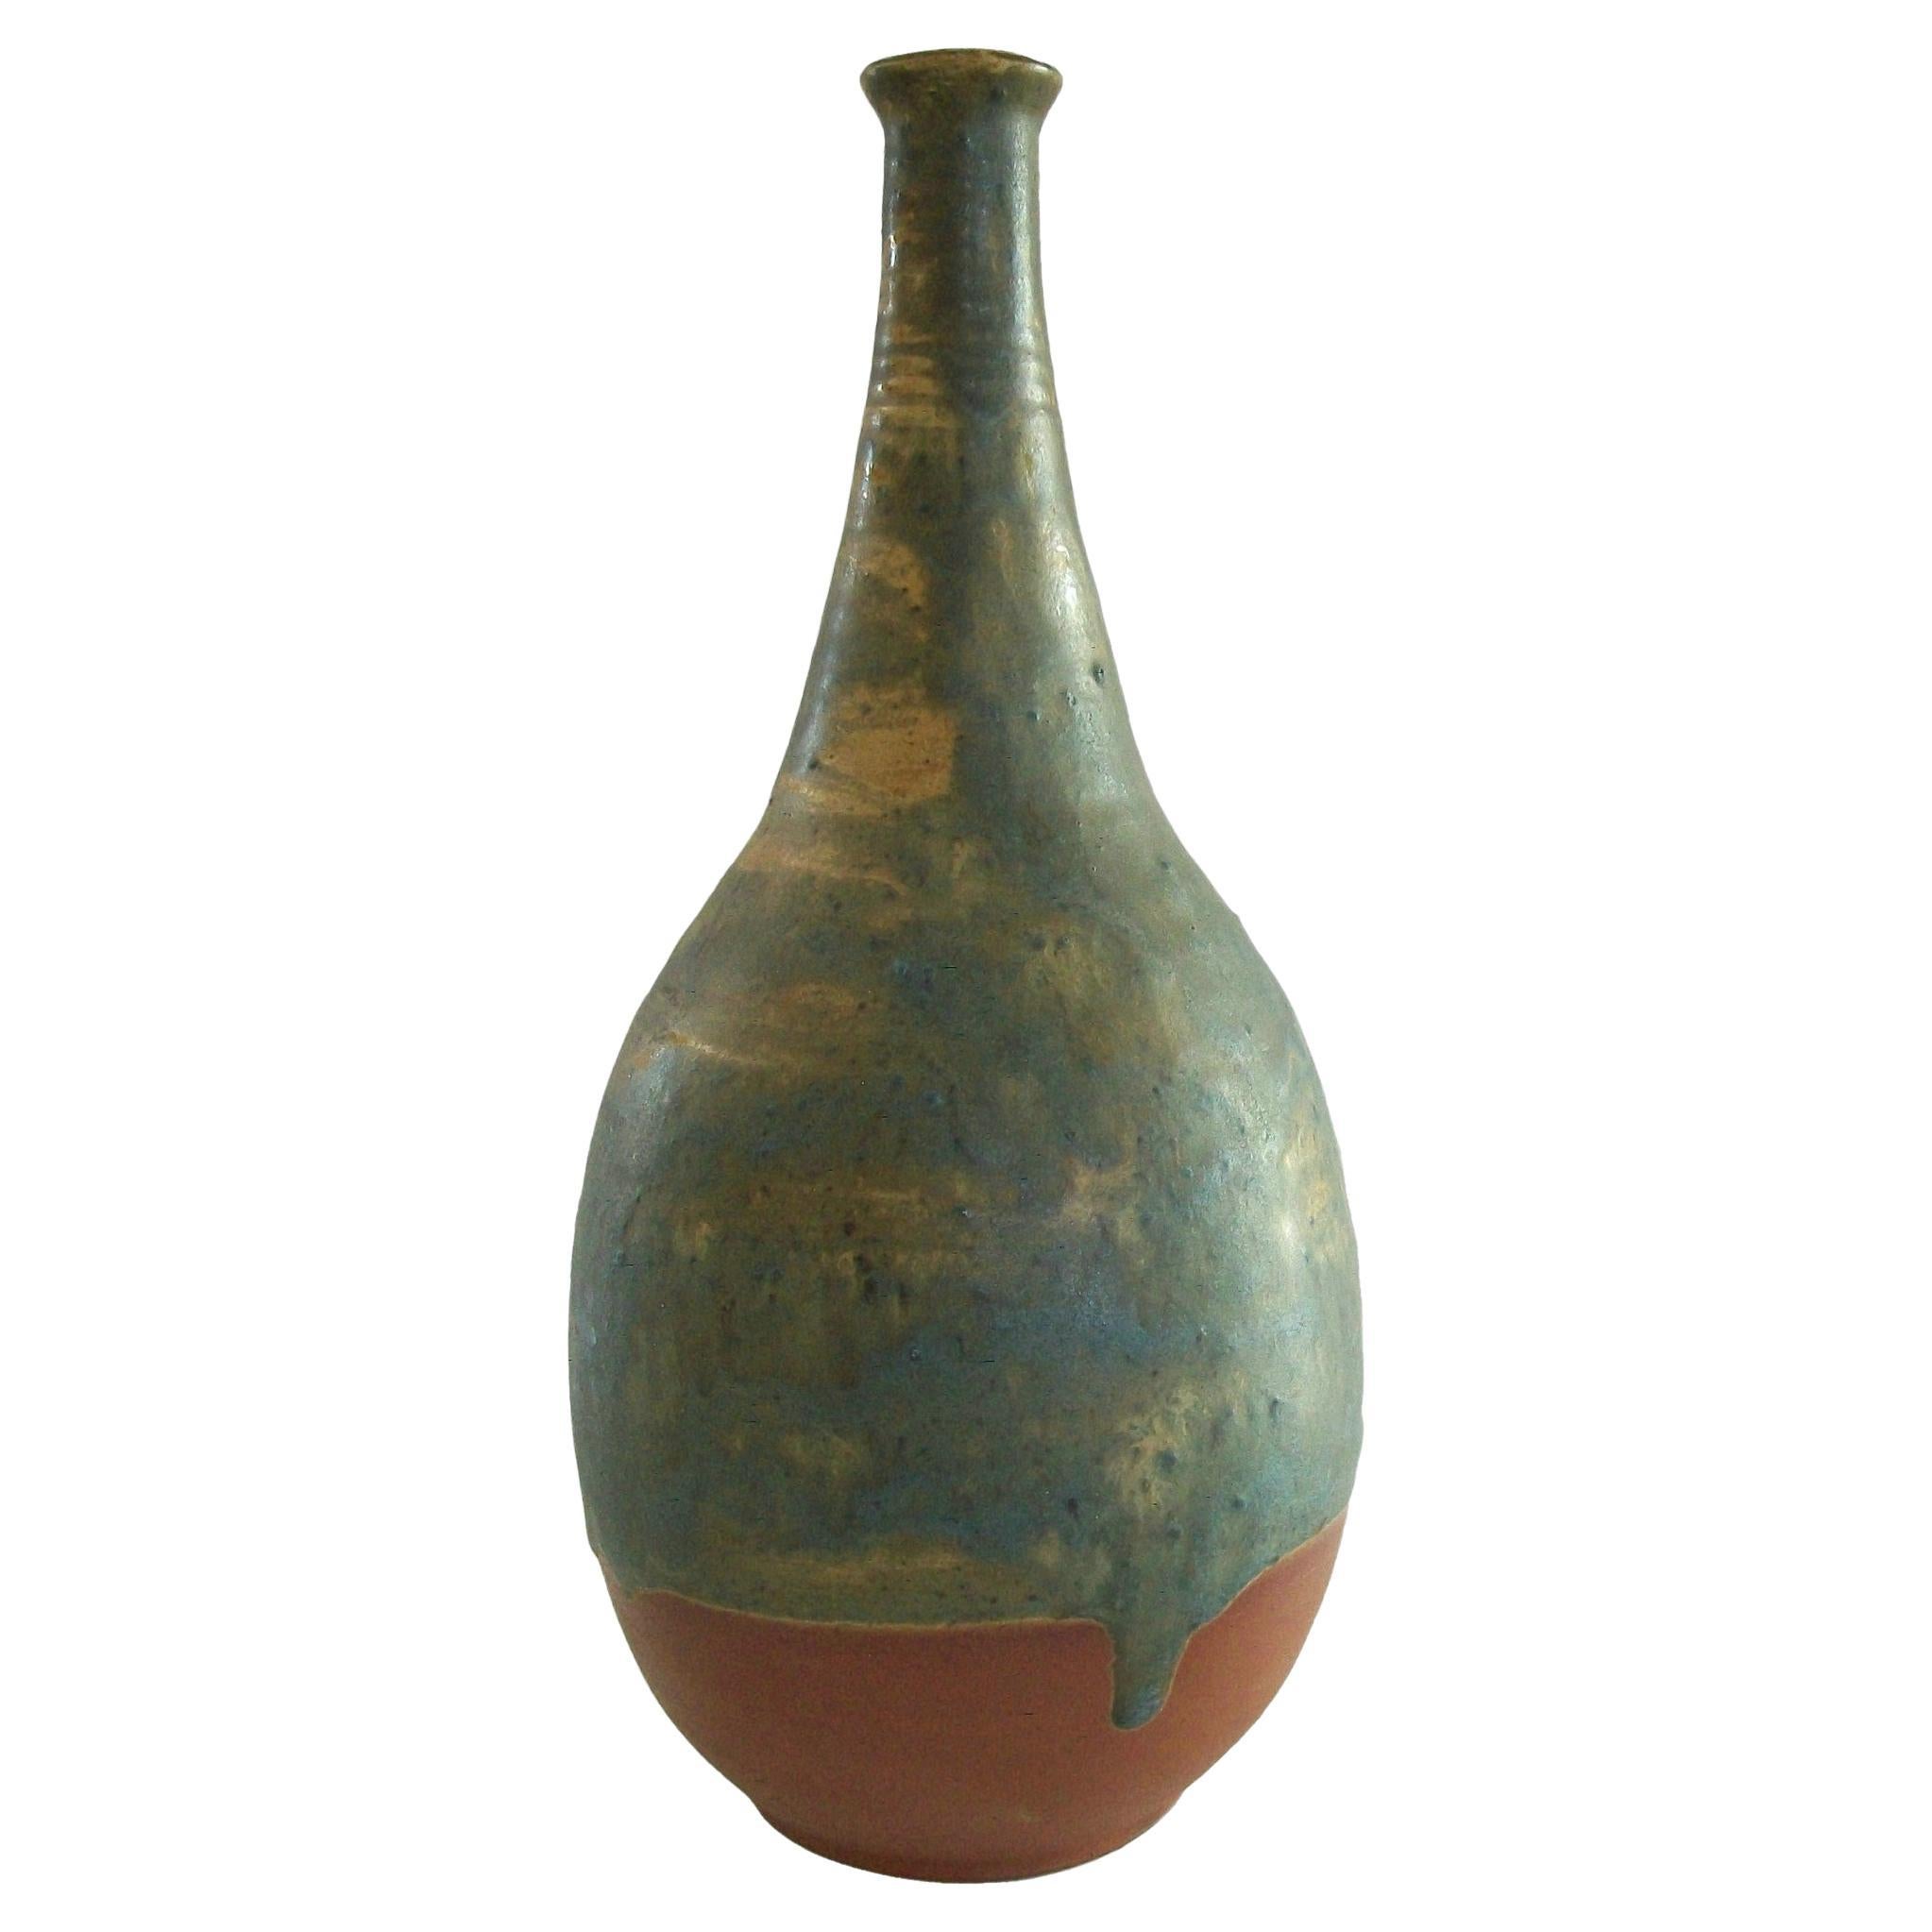 Treimane Art Pottery - Midcentury Studio Pottery Vase - Canada - circa 1960s